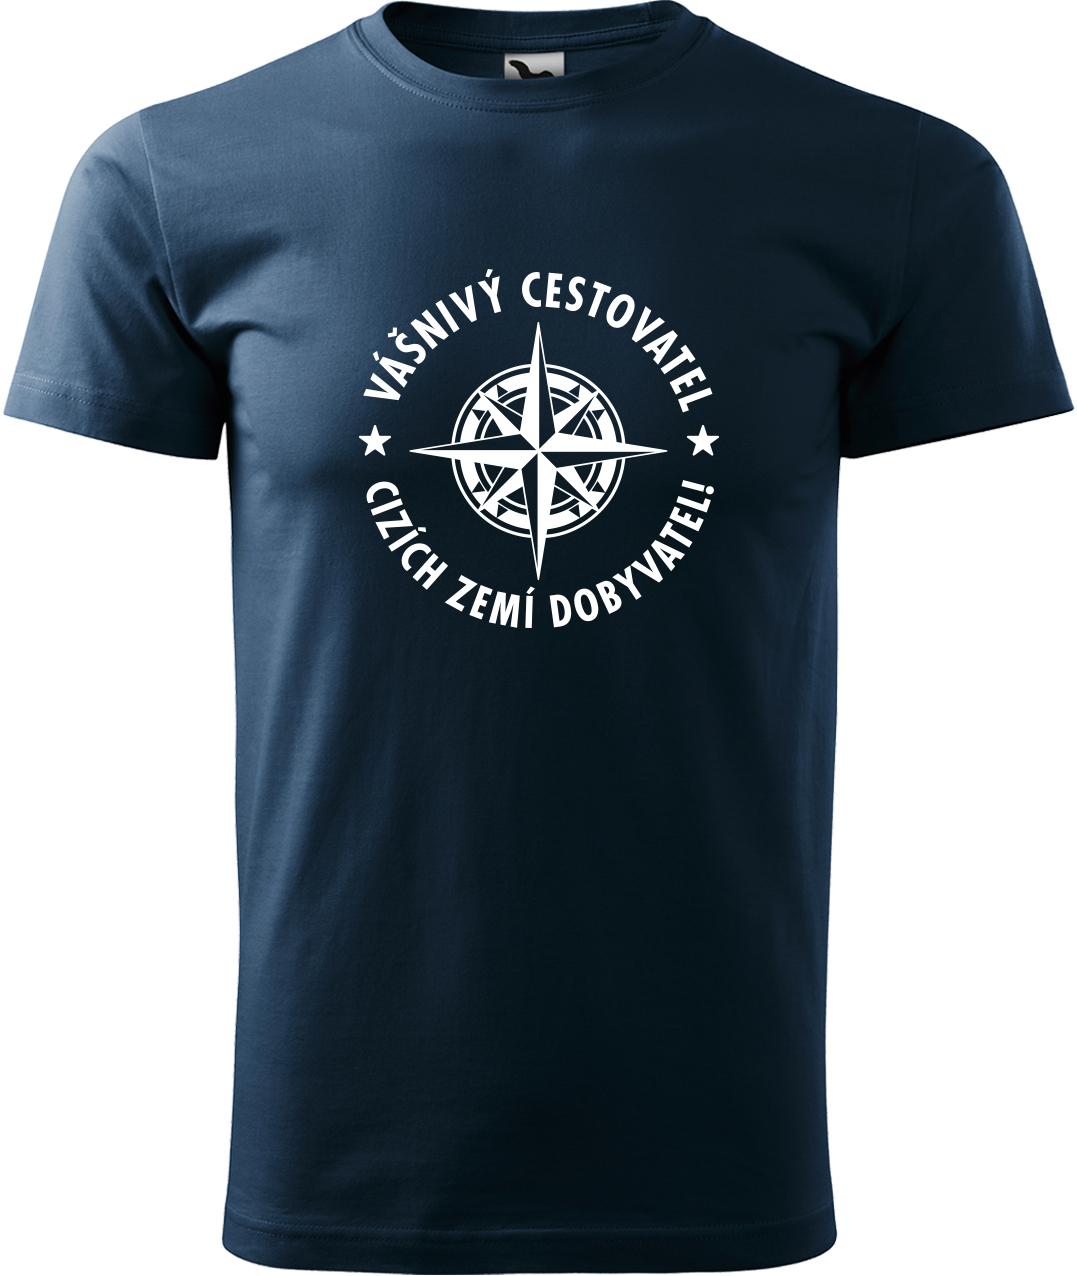 Pánské cestovatelské tričko - Vášnivý cestovatel, cizích zemí dobyvatel Velikost: XL, Barva: Námořní modrá (02), Střih: pánský